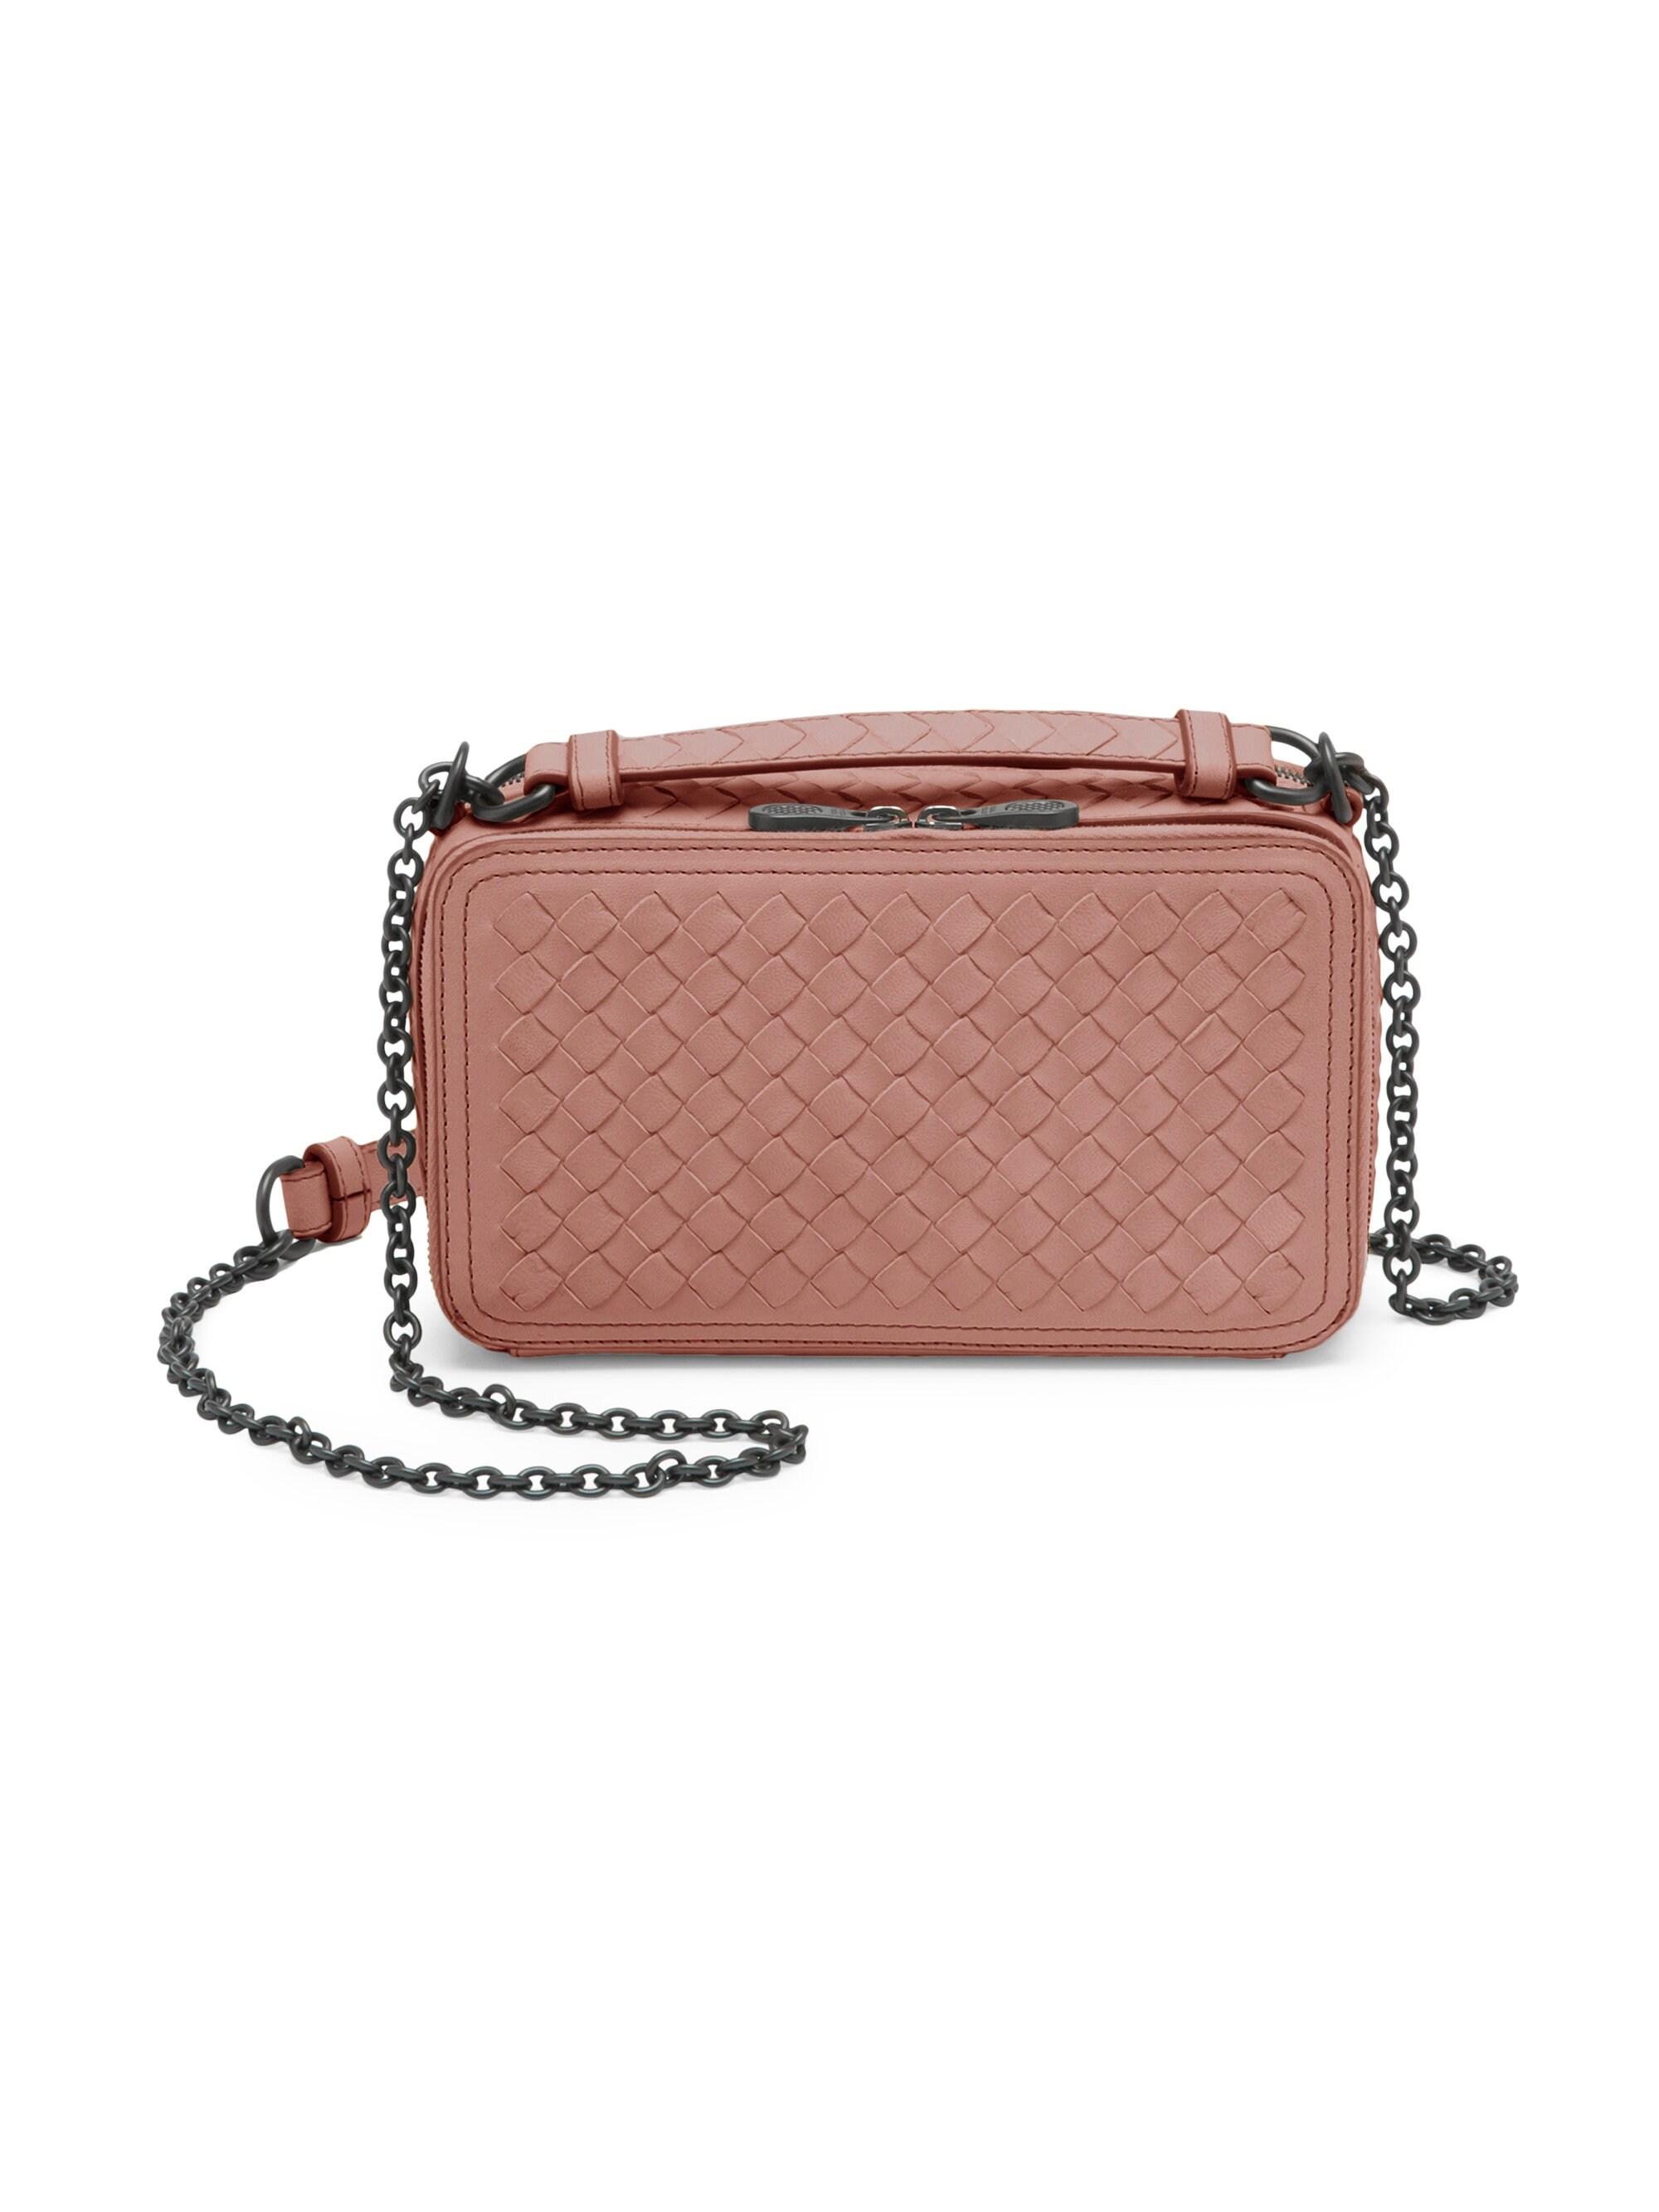 Bottega Veneta Leather Camera Bag in Rose (Pink) - Lyst